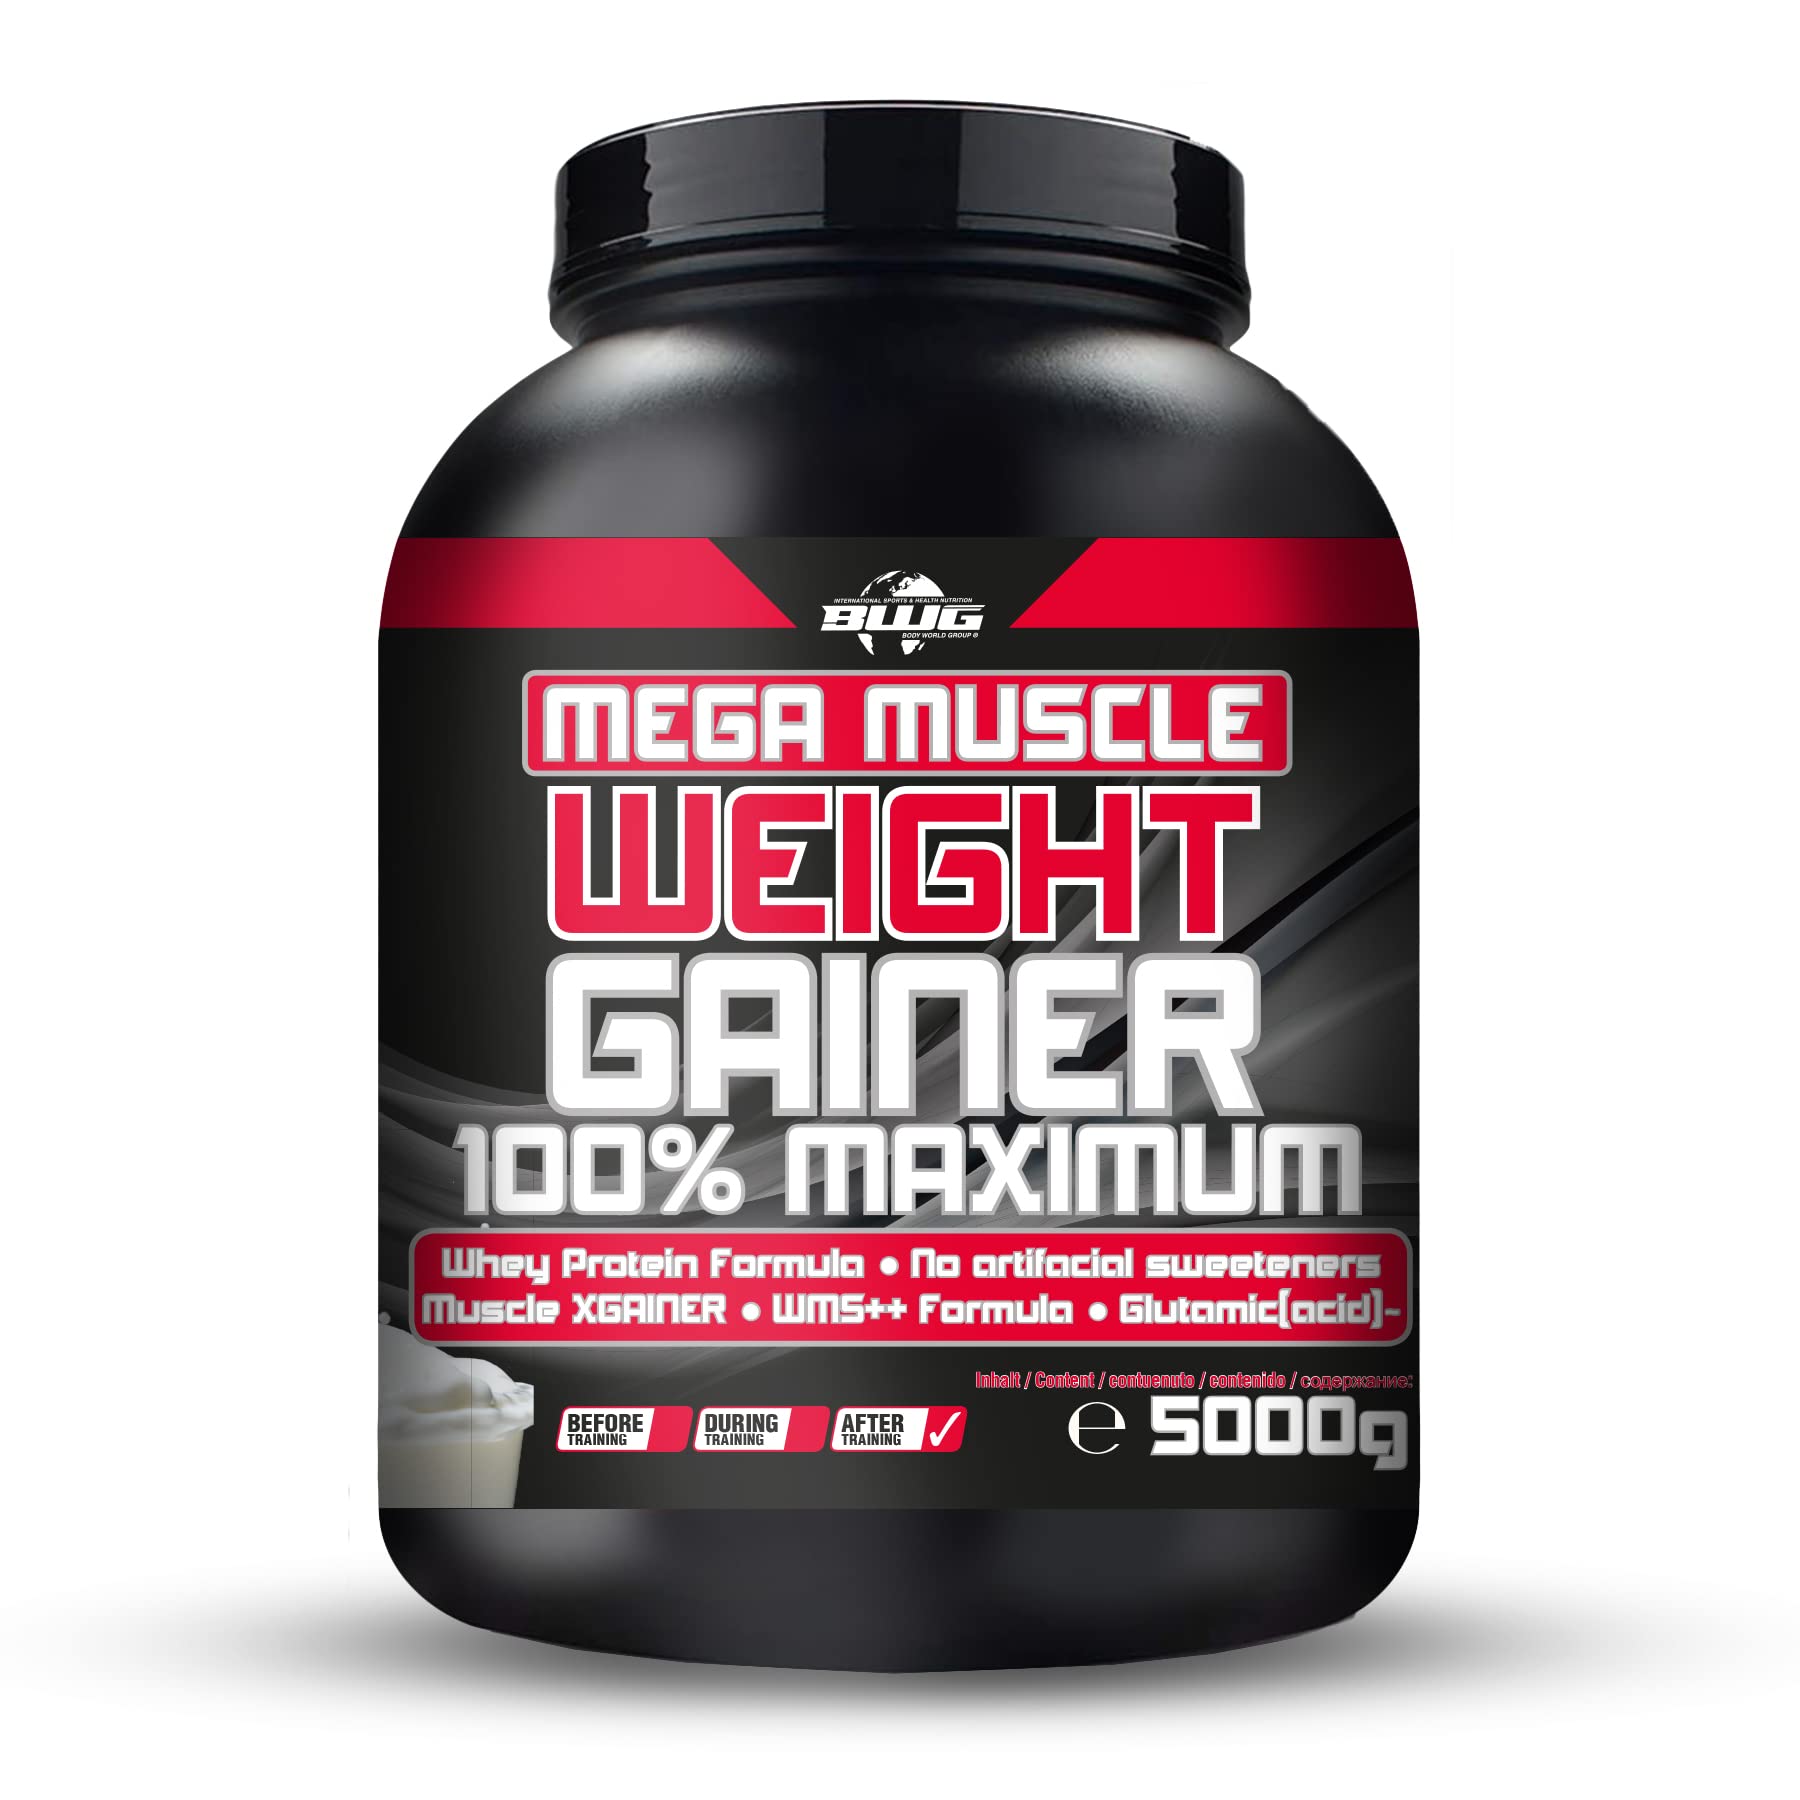 BWG Mega Muscle Weight Gainer 100% Maximum - perfekt für HardGainer und Massephasen – Kraftaufbau - Mega Banana - Dose mit Dosierlöffel - (1x 5000g Dose)